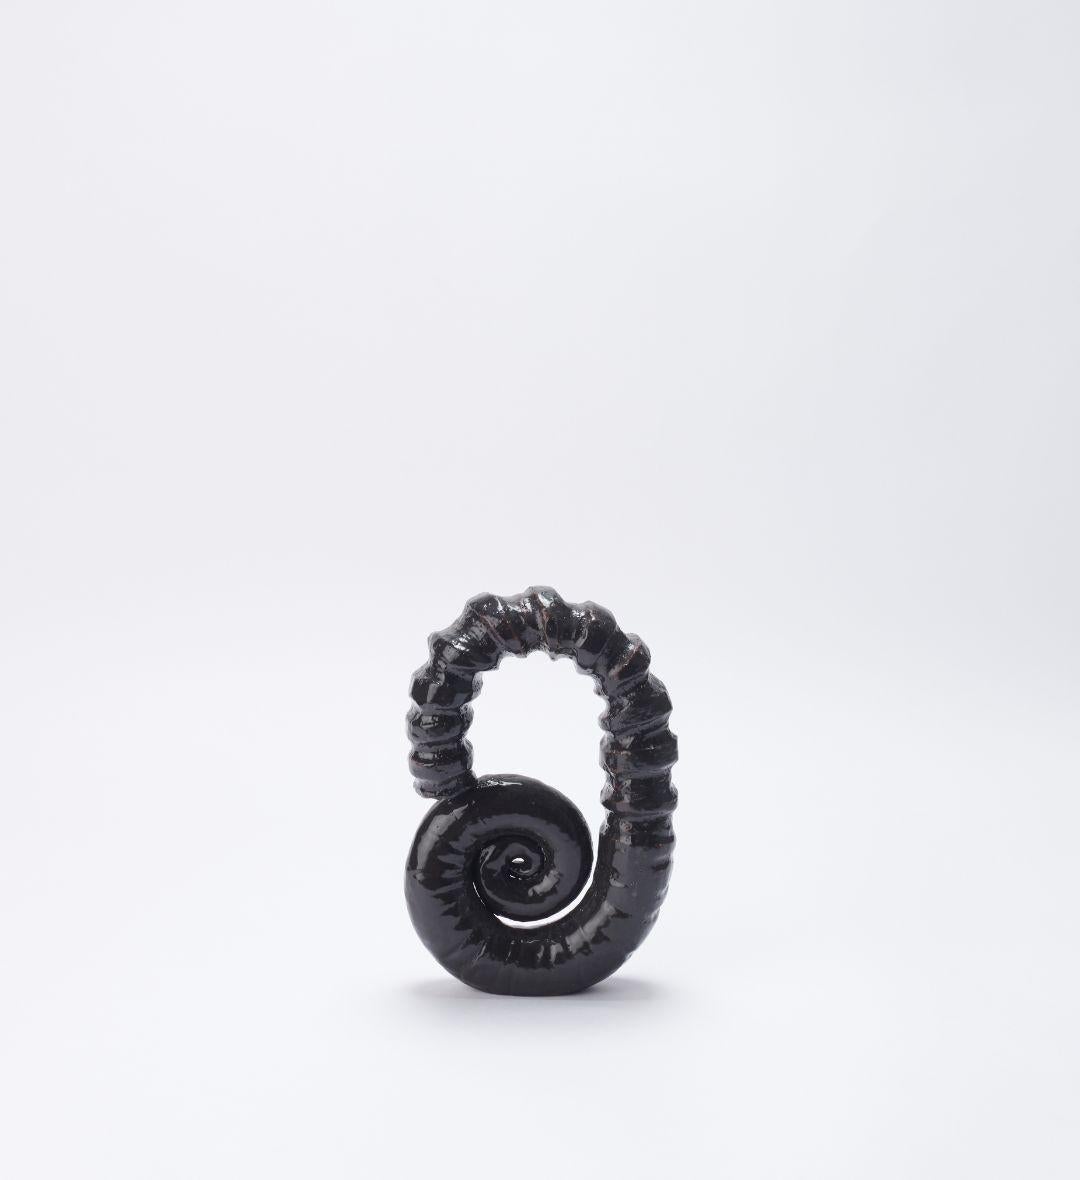 Dekoratives Objekt „Amonite 01“ von Joana Kieppe
Einzigartiges Stück.
Abmessungen: T 5 x B 14 x H 22 cm.
MATERIALIEN: Lotus-Hochtemperatur-Ton mit schwarzer Glasur.

Alle Stücke werden aus hochwertigem brasilianischem Wildton hergestellt, die